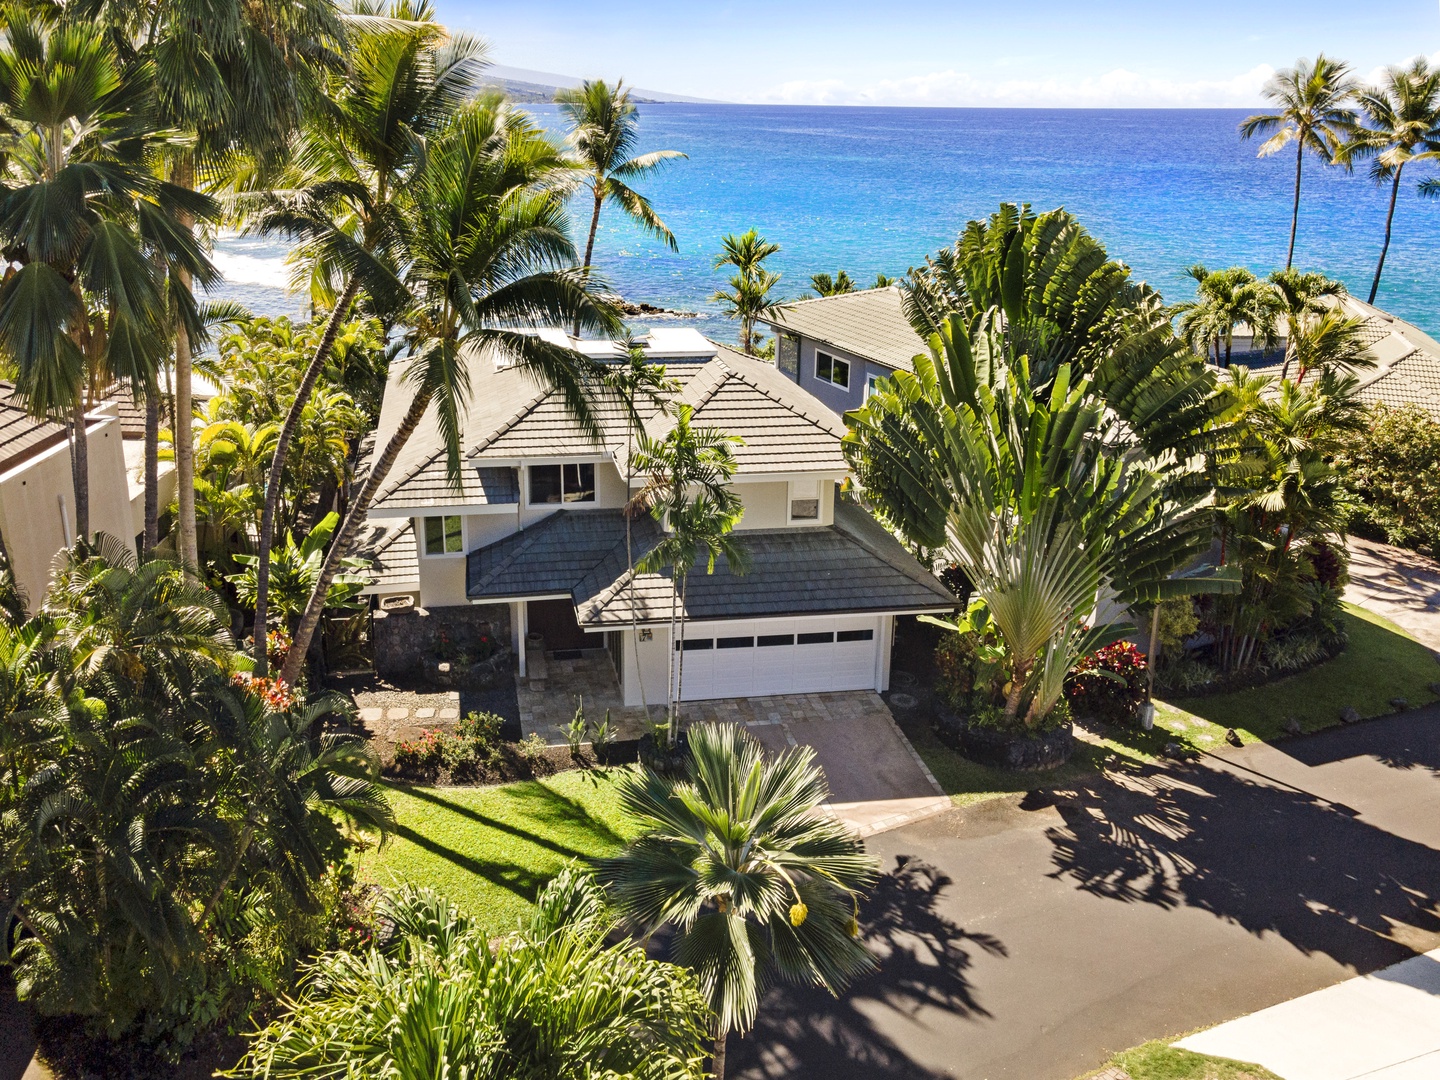 Kailua Kona Vacation Rentals, Ali'i Point #7 - 